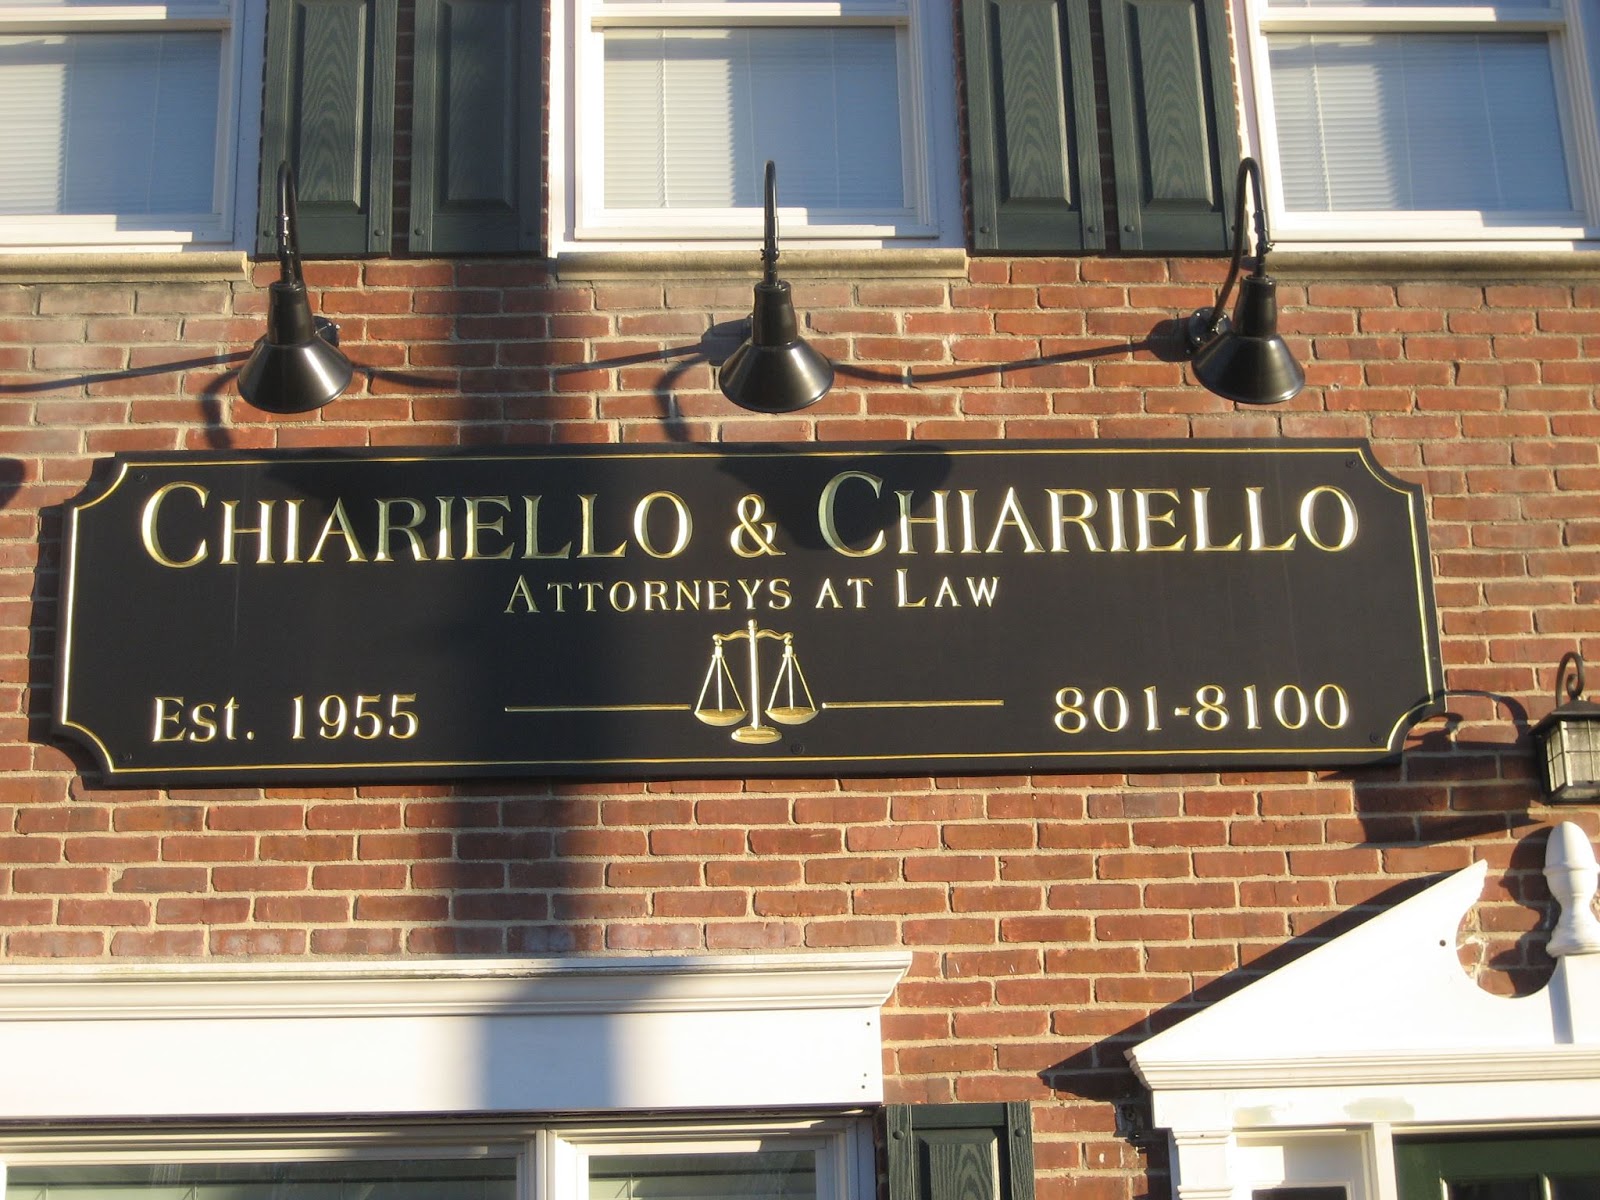 Photo of Chiariello & Chiariello in Glen Cove City, New York, United States - 4 Picture of Point of interest, Establishment, Lawyer